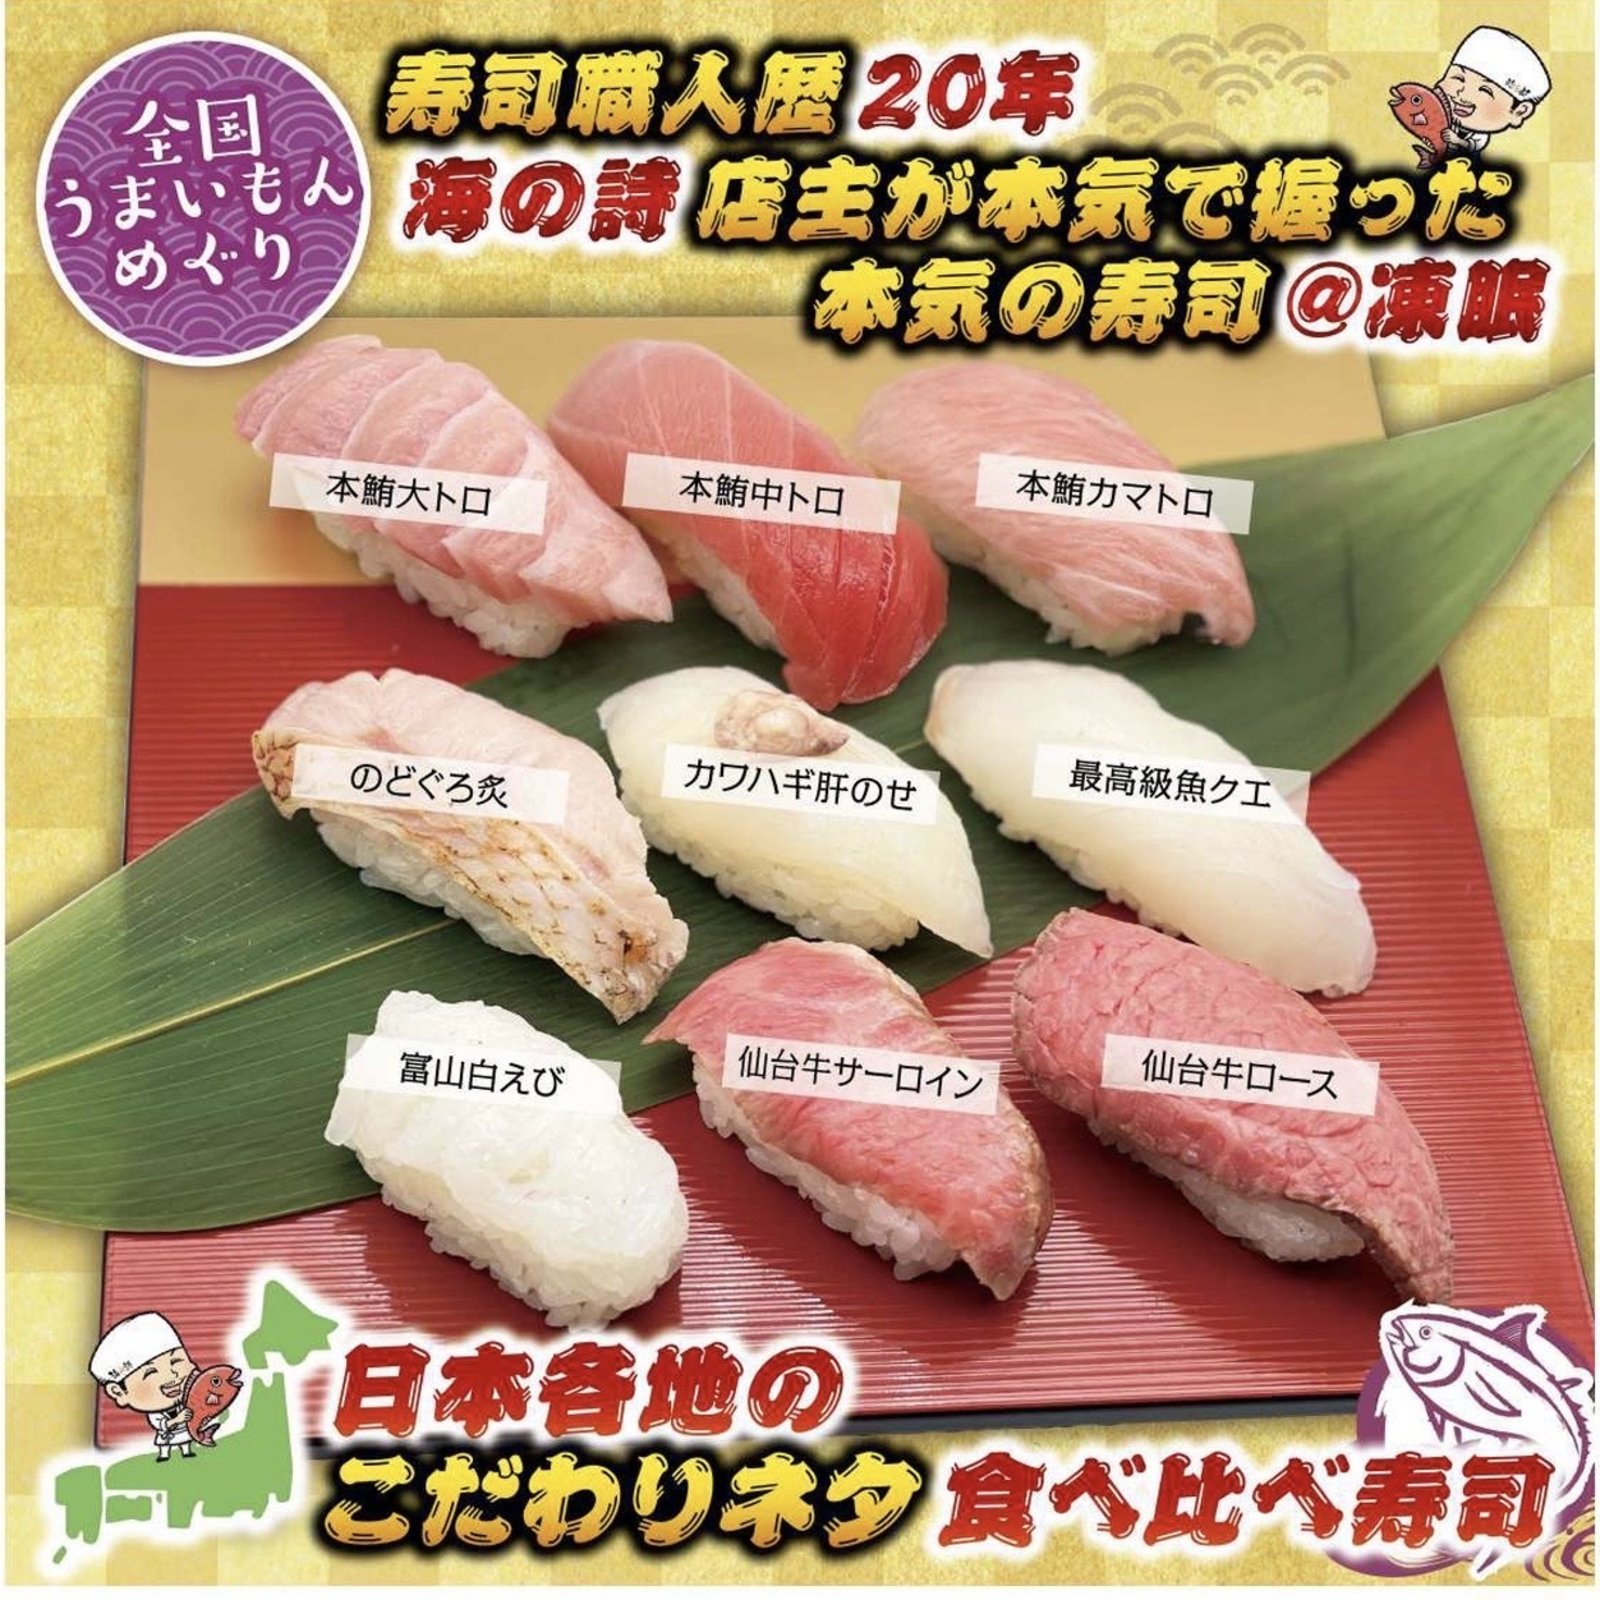 □1番人気□絶対オススメ□日本各地のこだわりネタ 食べ比べ寿司